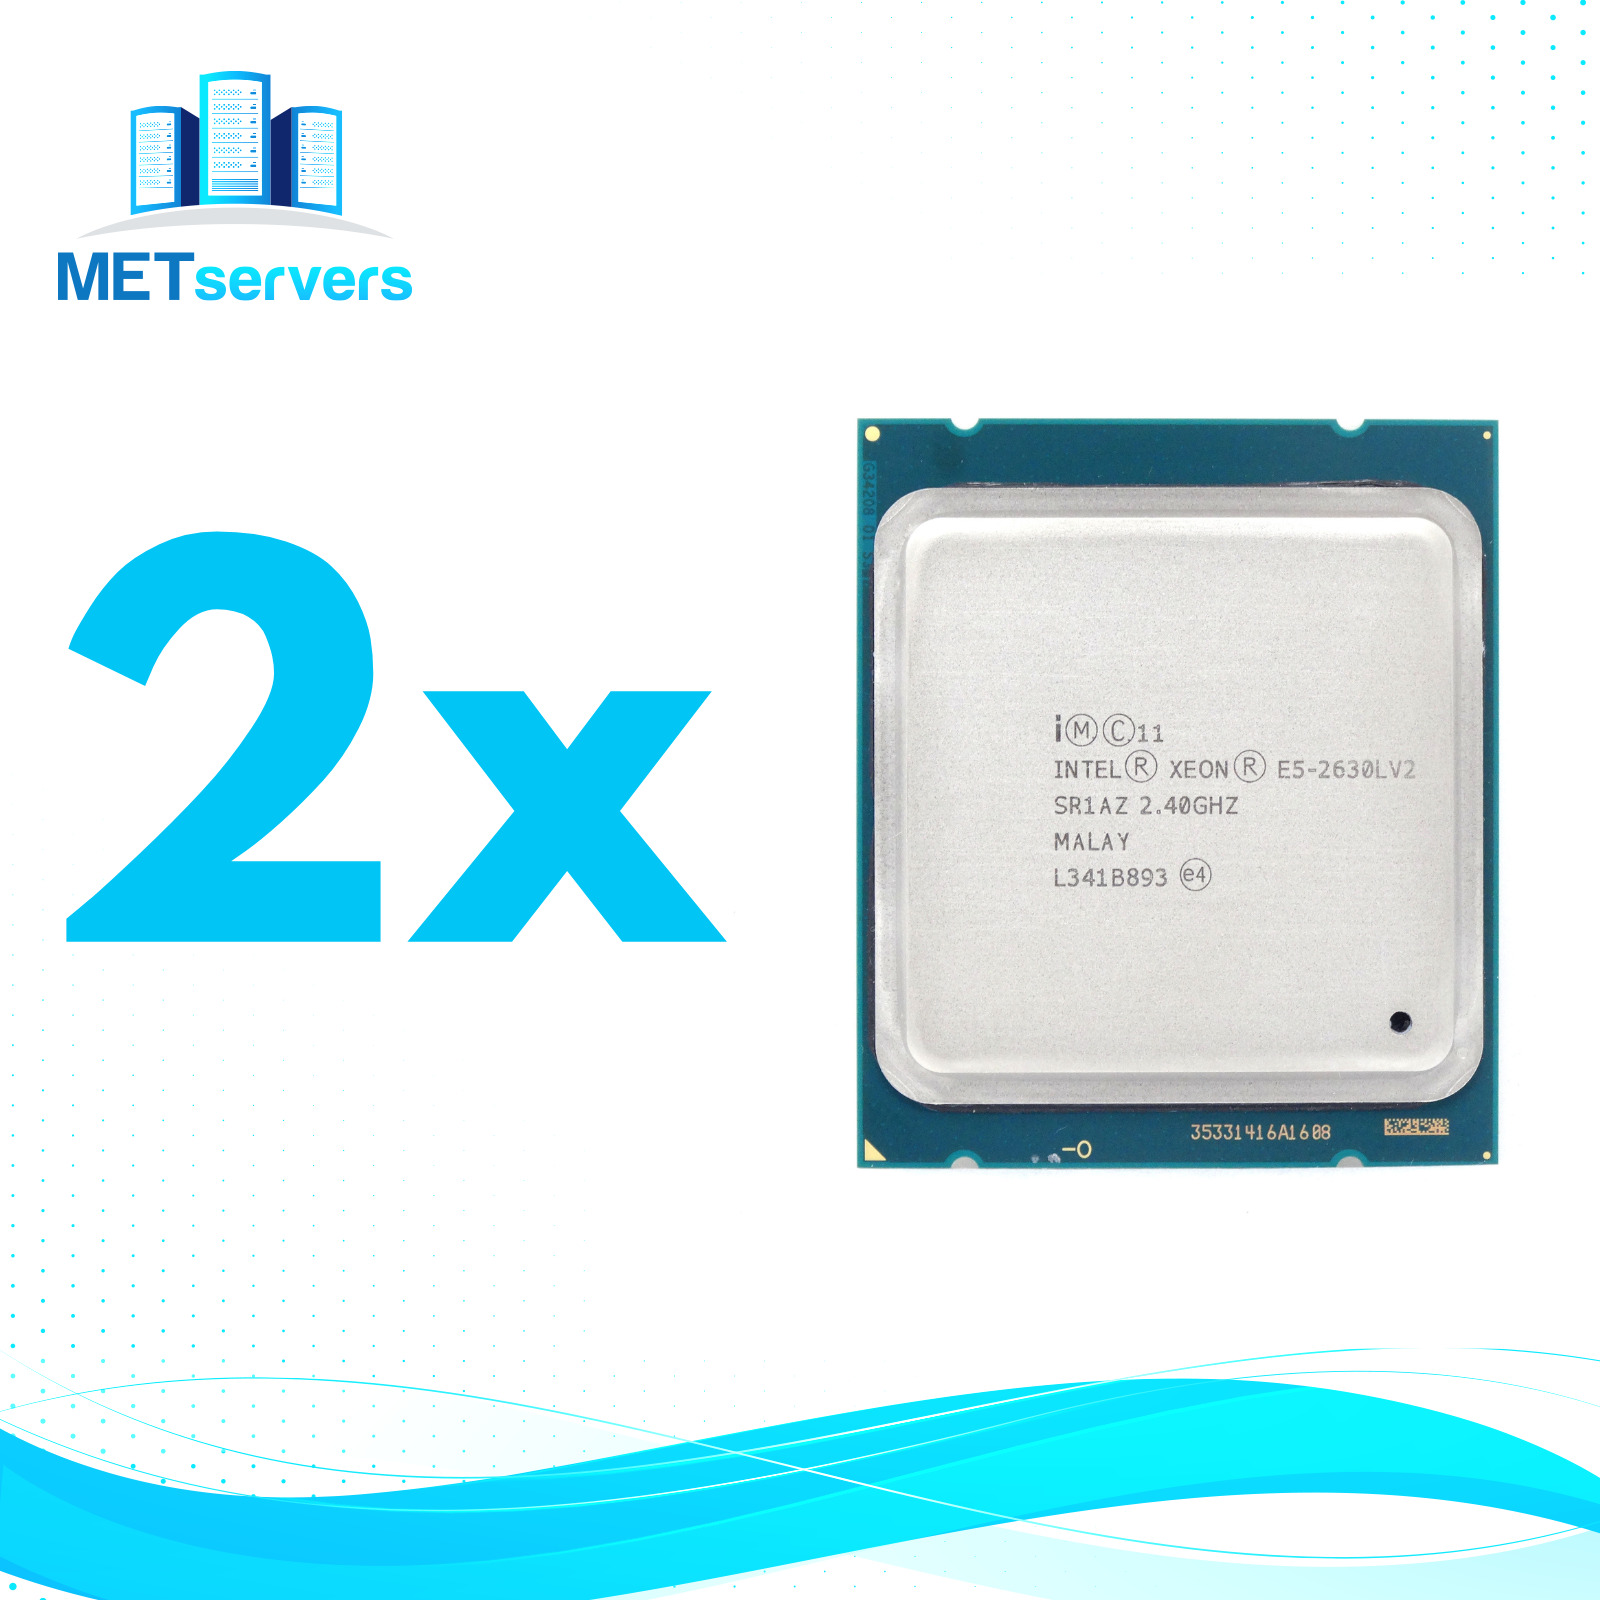  2x Lot of Intel Xeon E5-2630L v2 2.4GHz 6-Core 15MB LGA2011 CPU Processor 